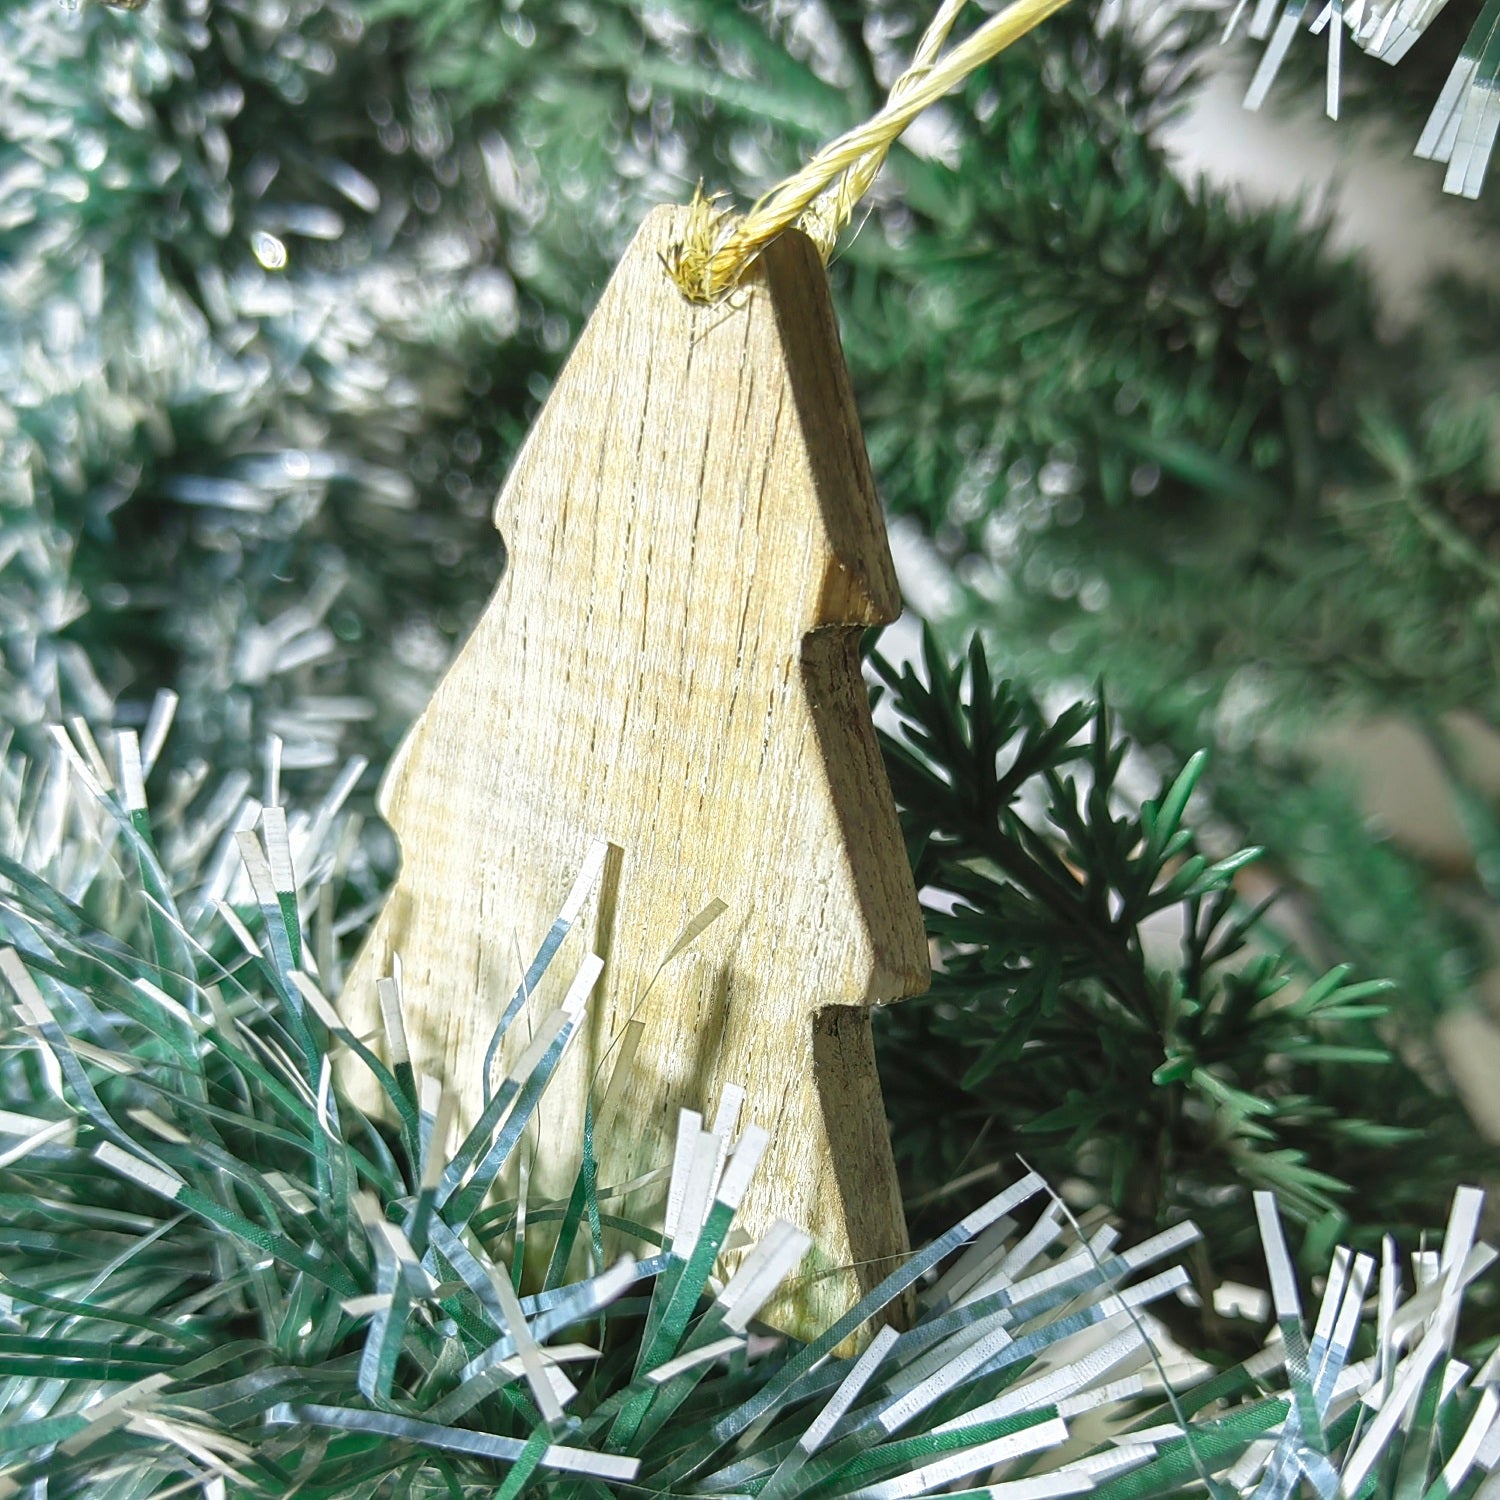 Adorno navideño tallado en madera con terminado vintage en forma de arbol de navidad